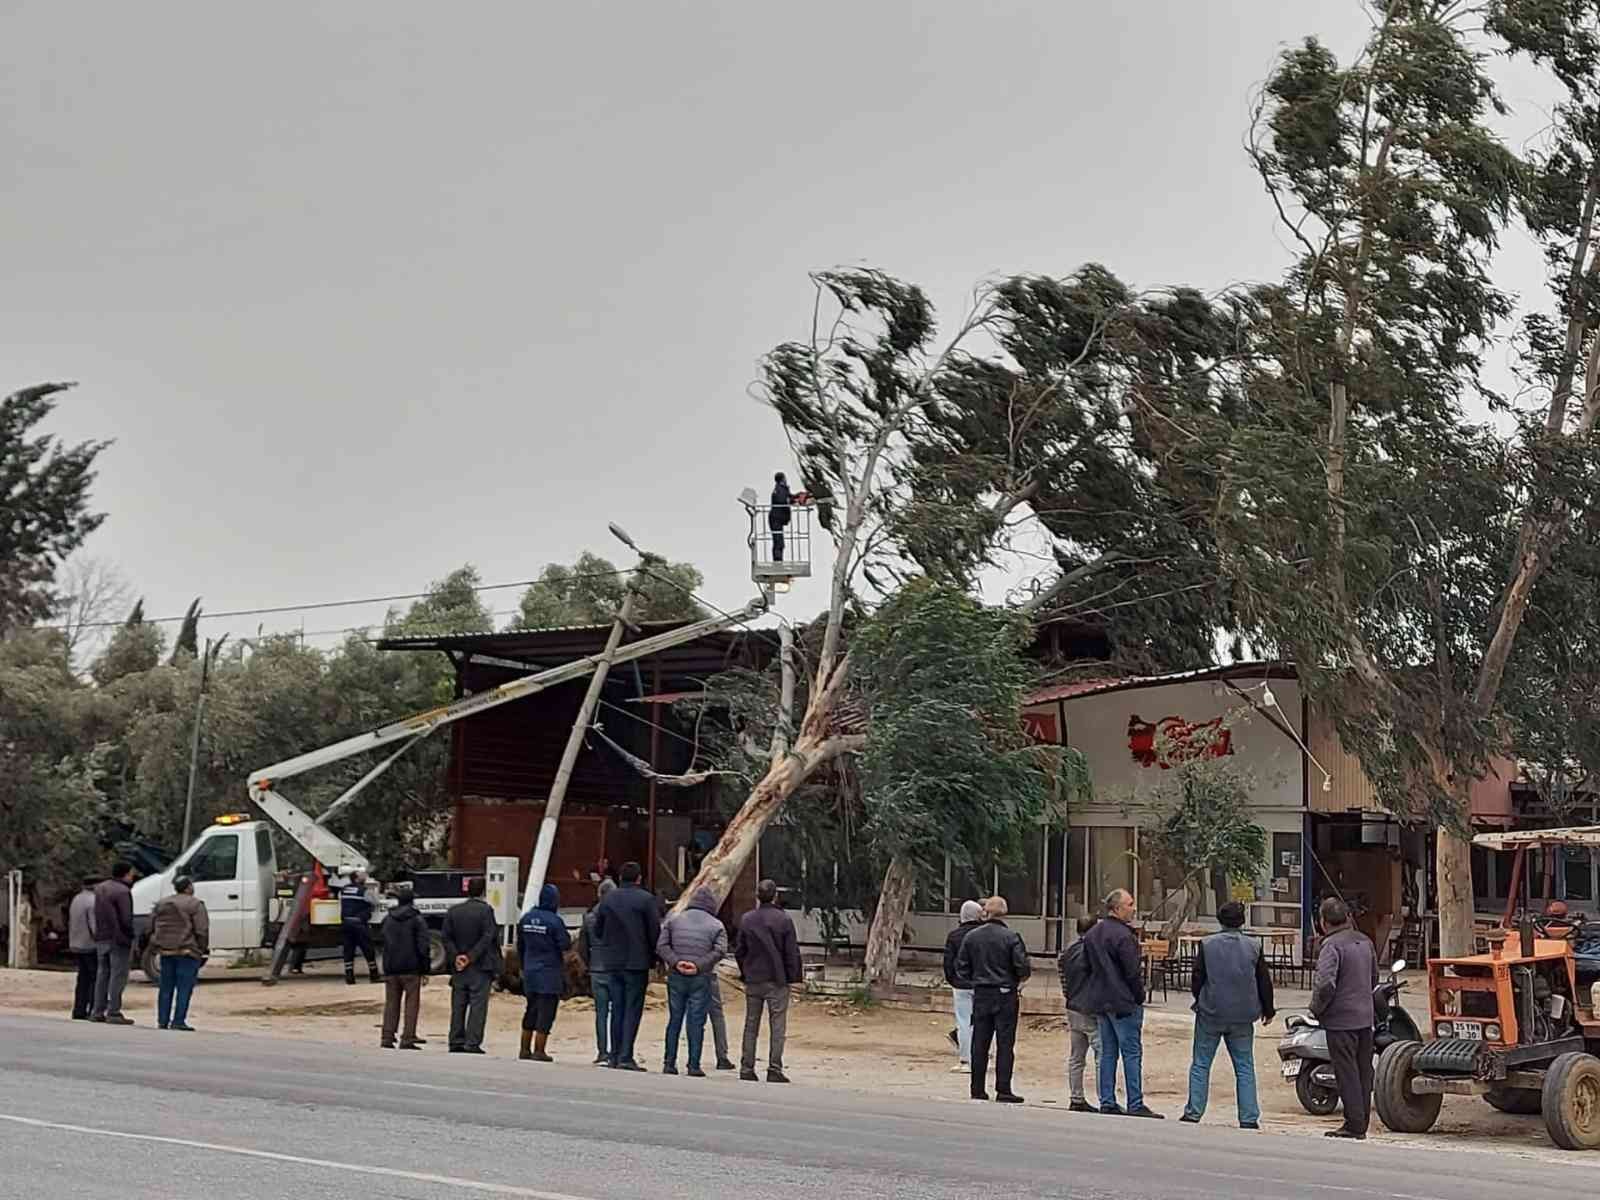 Fırtına İzmir’de ağaçları kökünden söktü, çatıları uçurdu #izmir